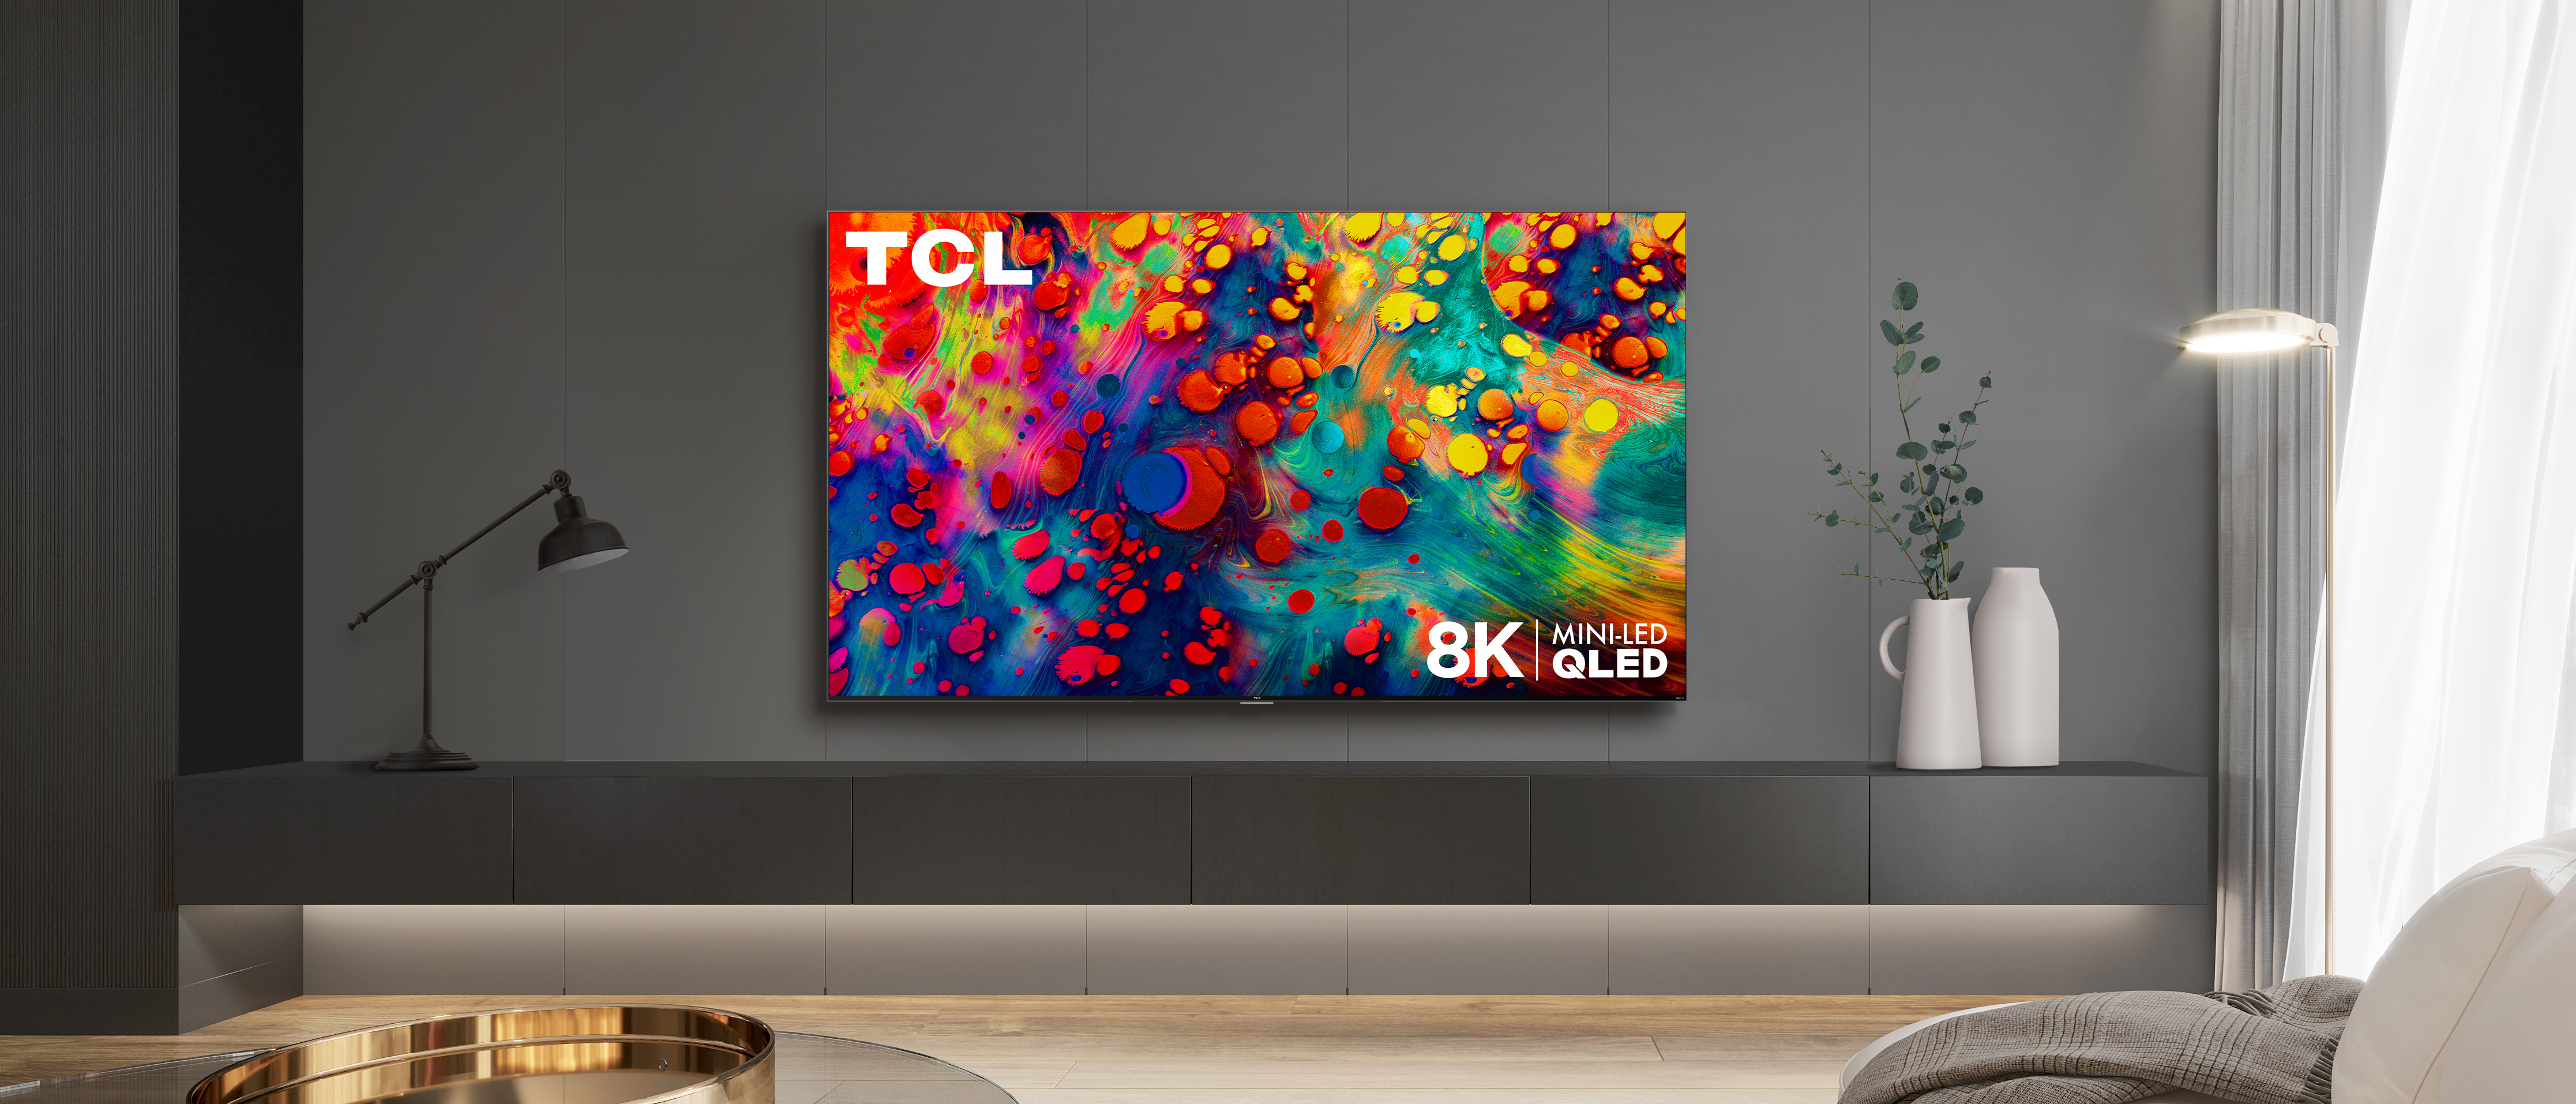 Tcl телевизоры 50 qled. TCL Mini-led TV. TCL QLED. Телевизор ТСЛ мини лед.